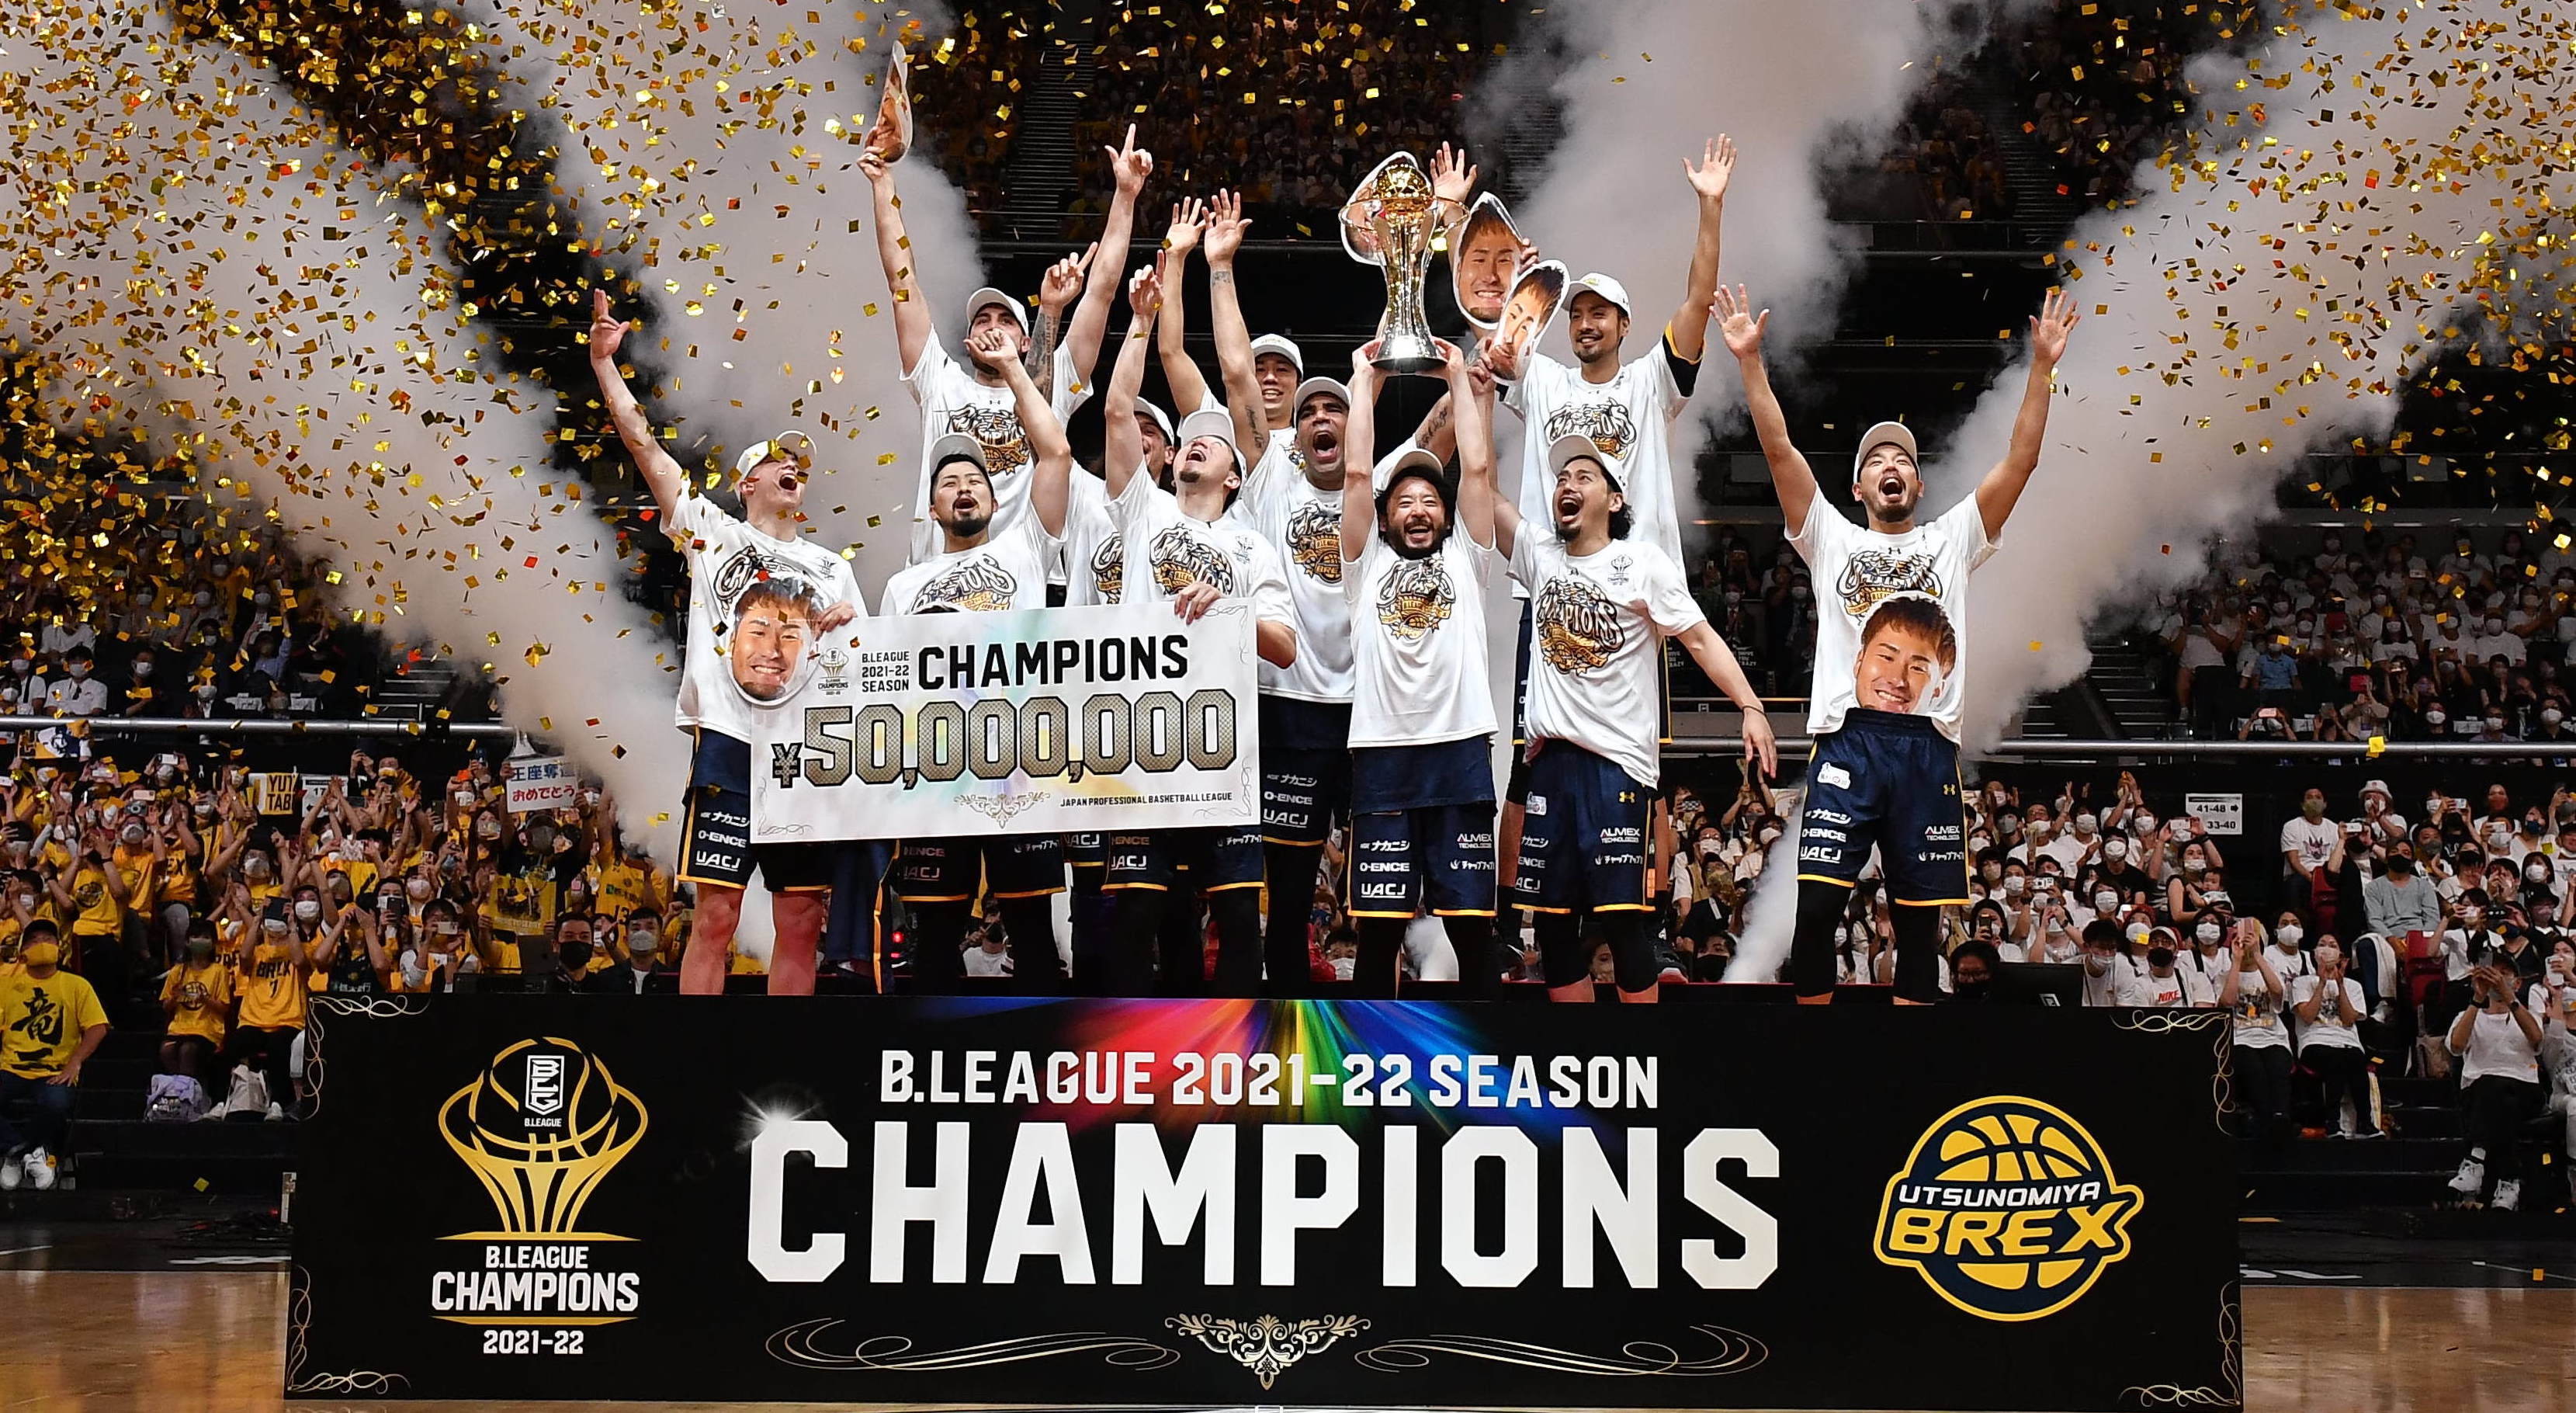 「宇都宮ブレックス」が5シーズンぶり2度目の優勝<br> B.LEAGUE 2021-22シーズン 年間チャンピオン決定のお知らせ